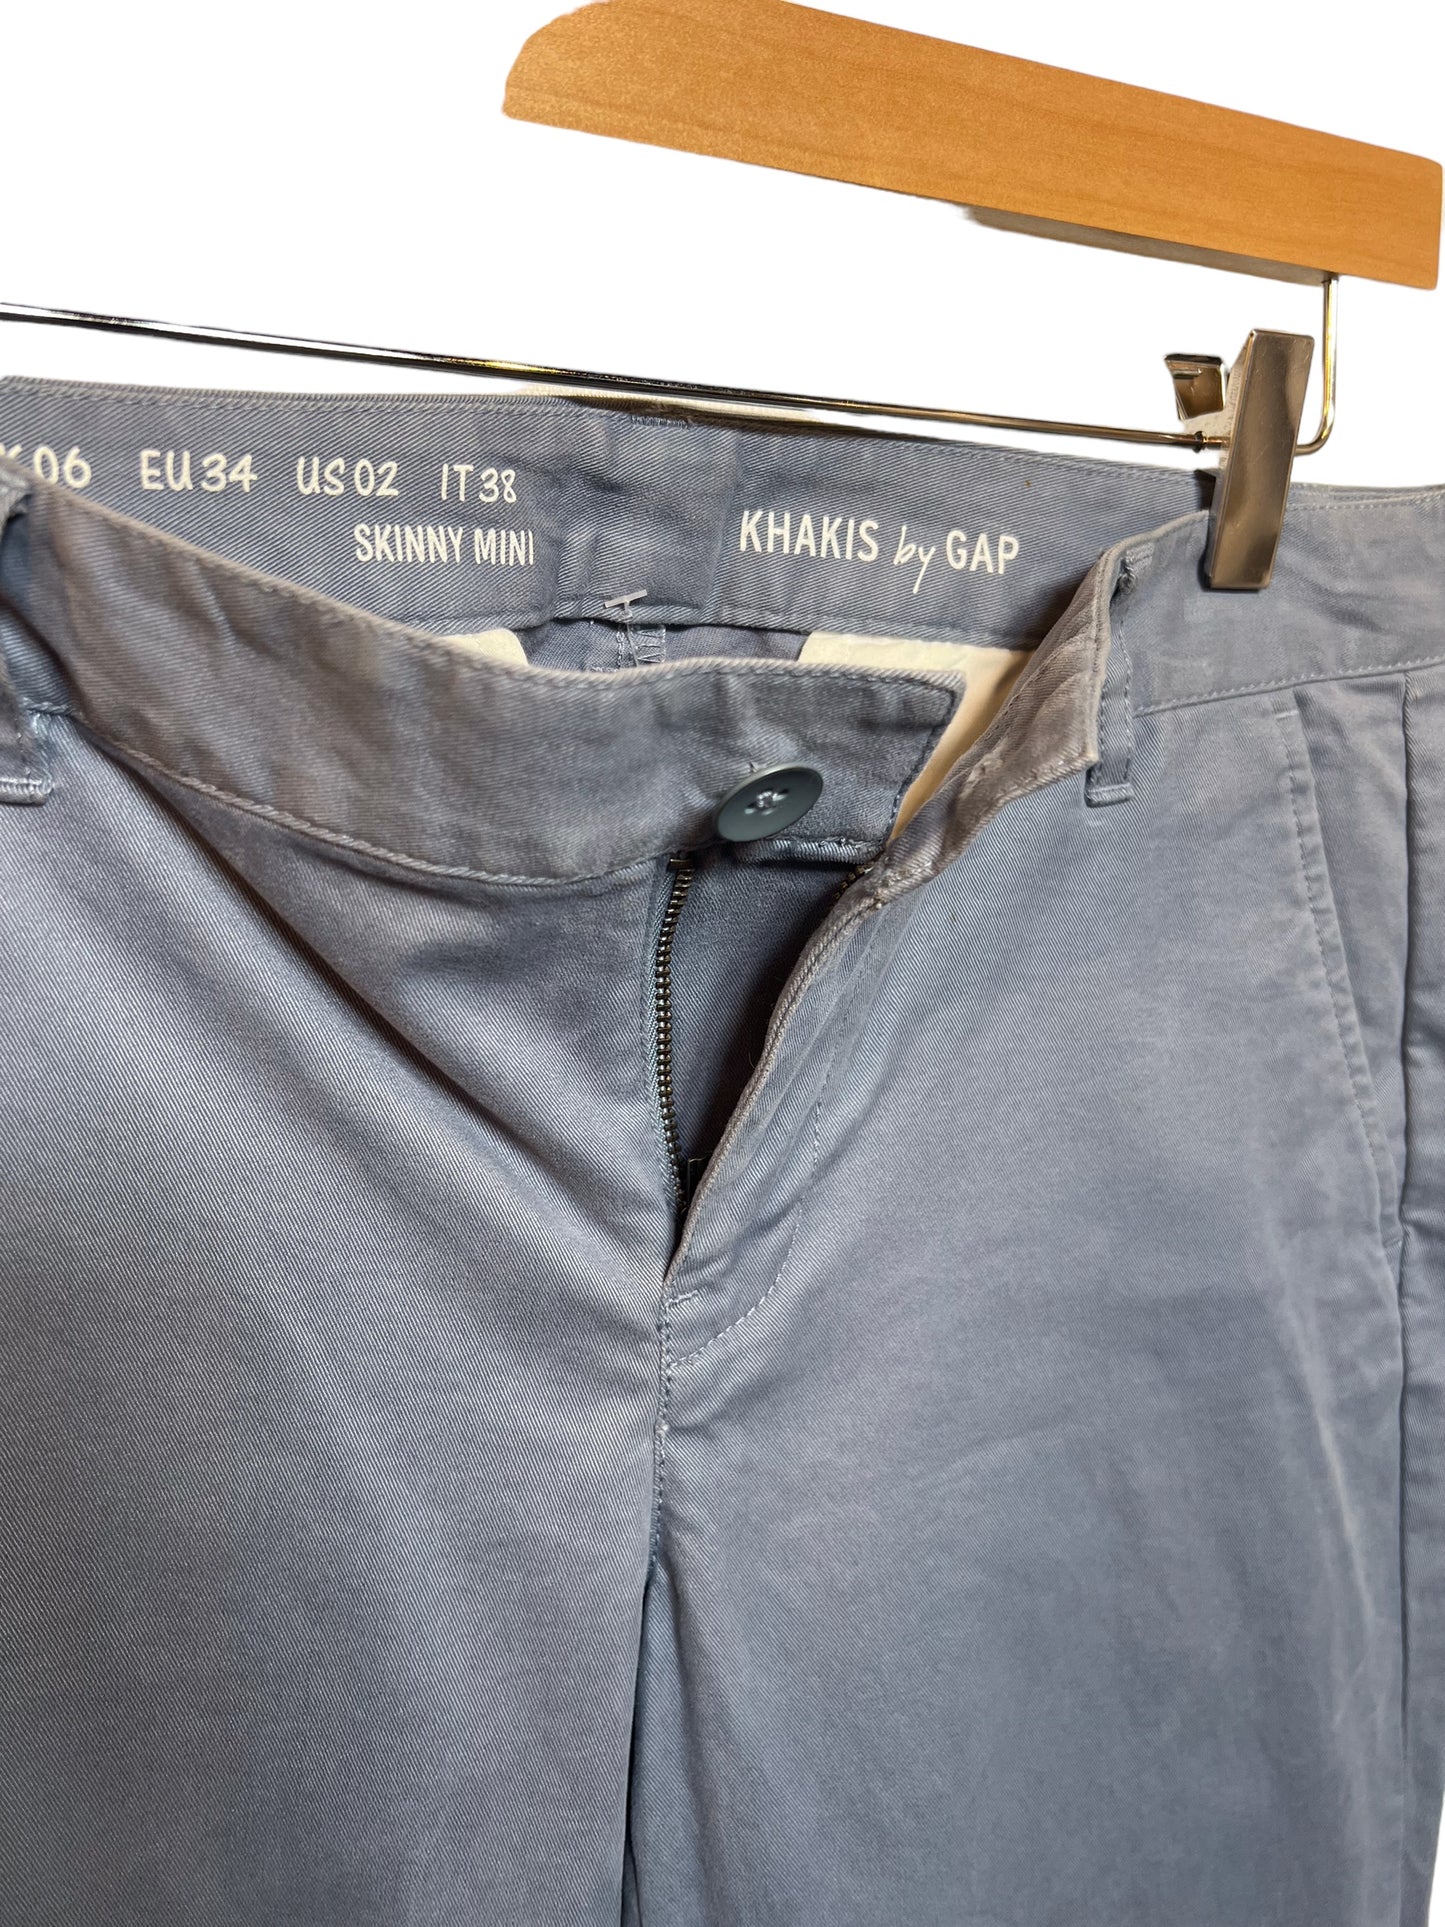 Vintage Gap Women’s Khakis Trousers (Size W32)